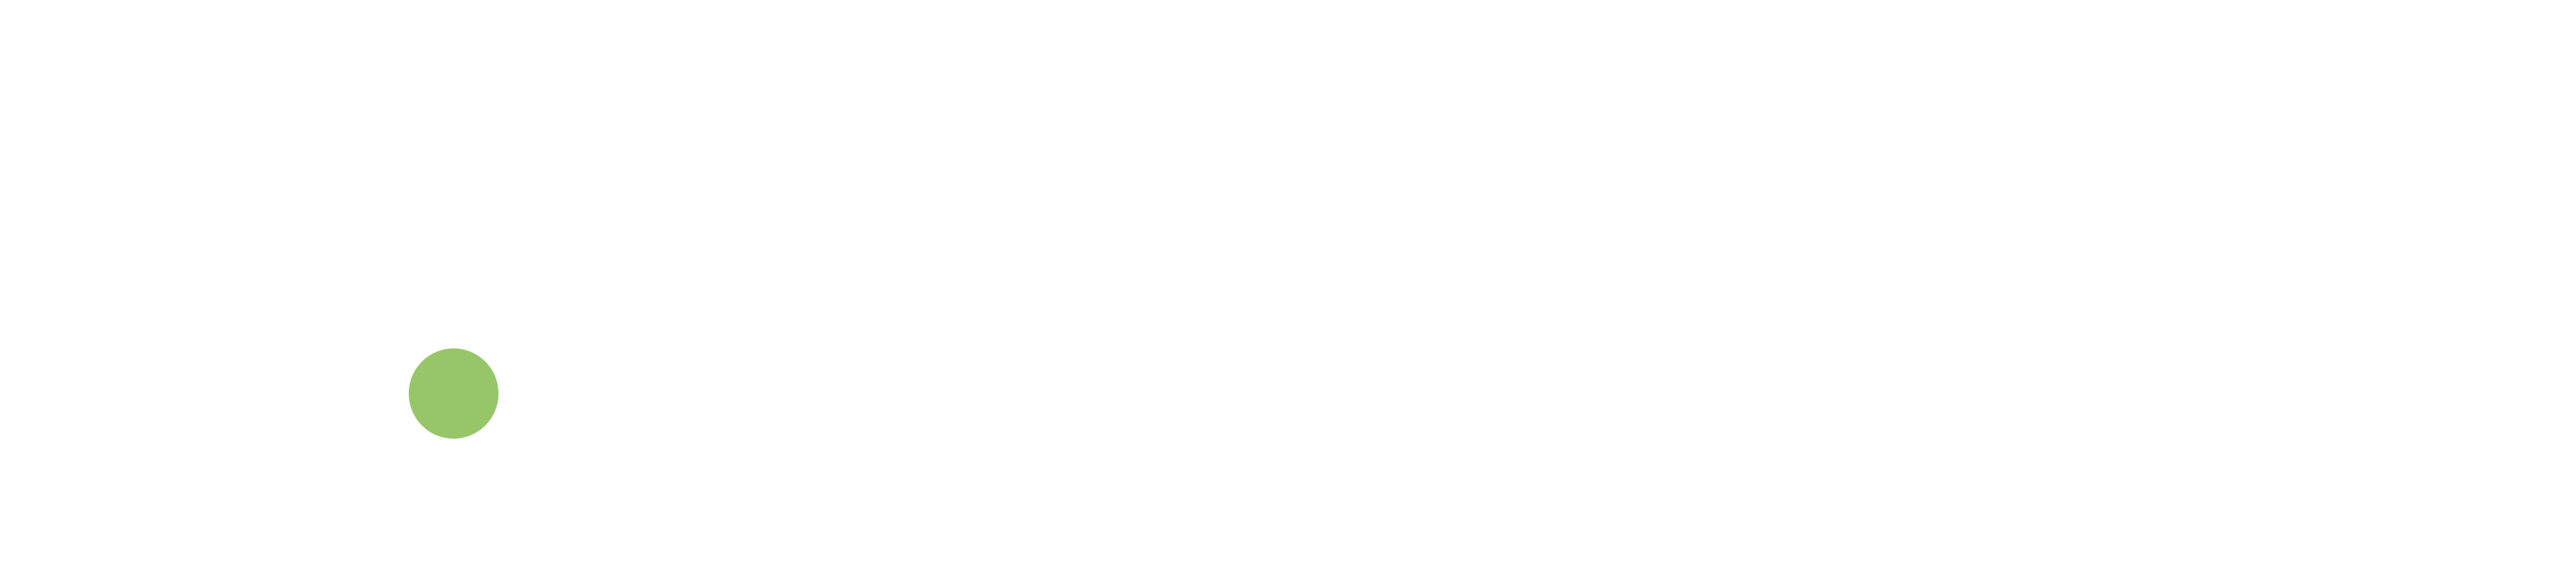 MergerMarket Group